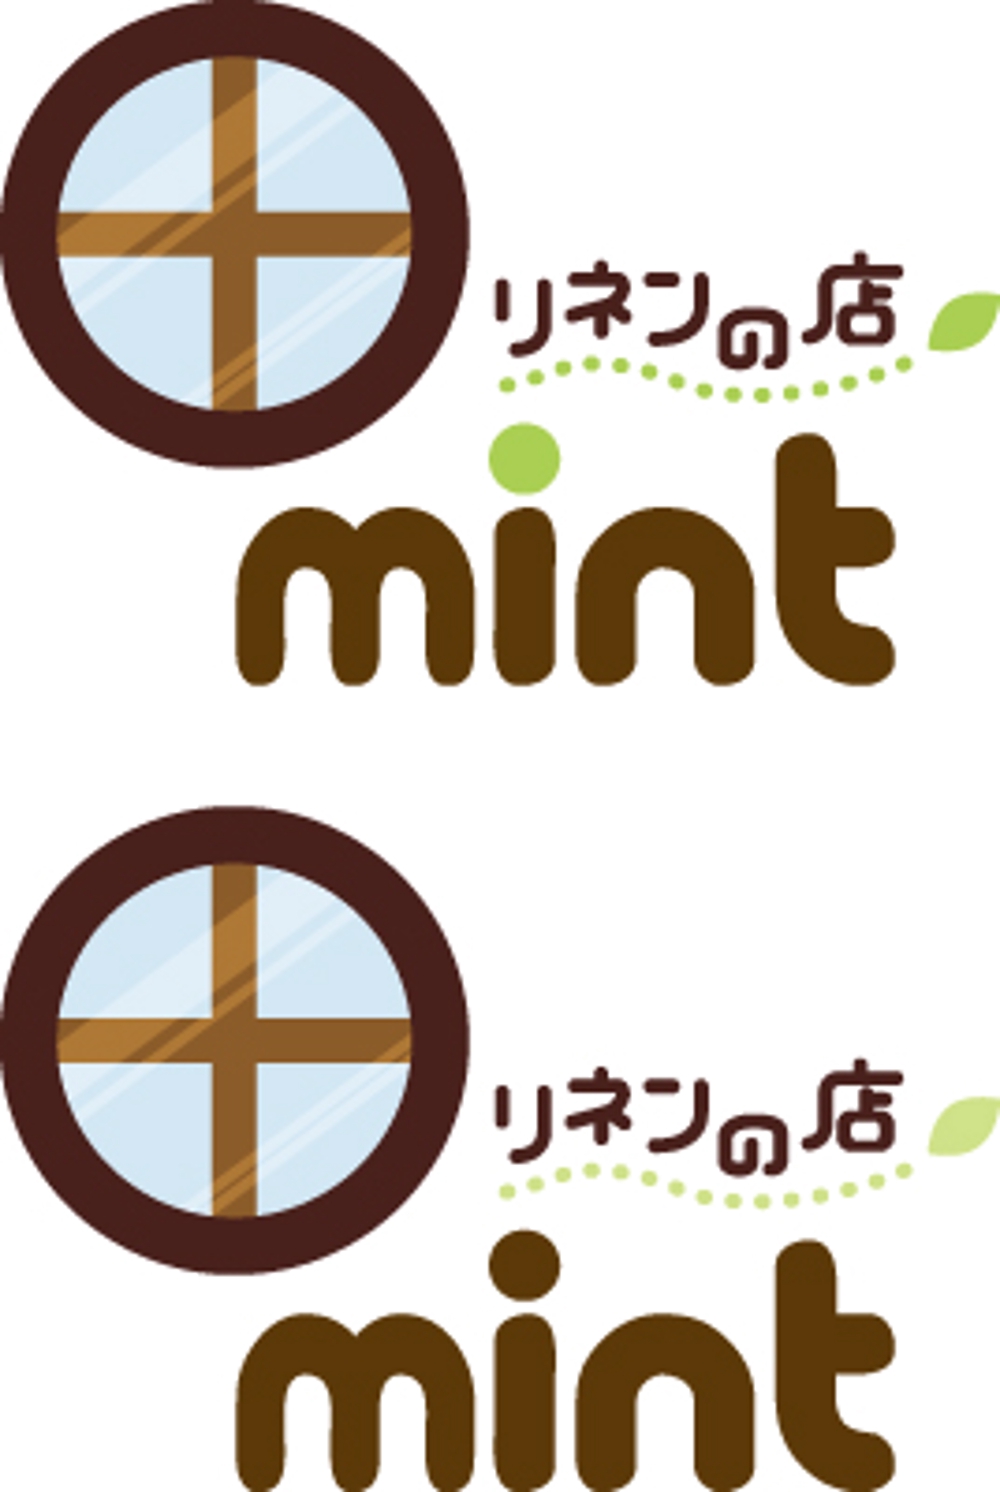 リネンと雑貨の店のロゴ